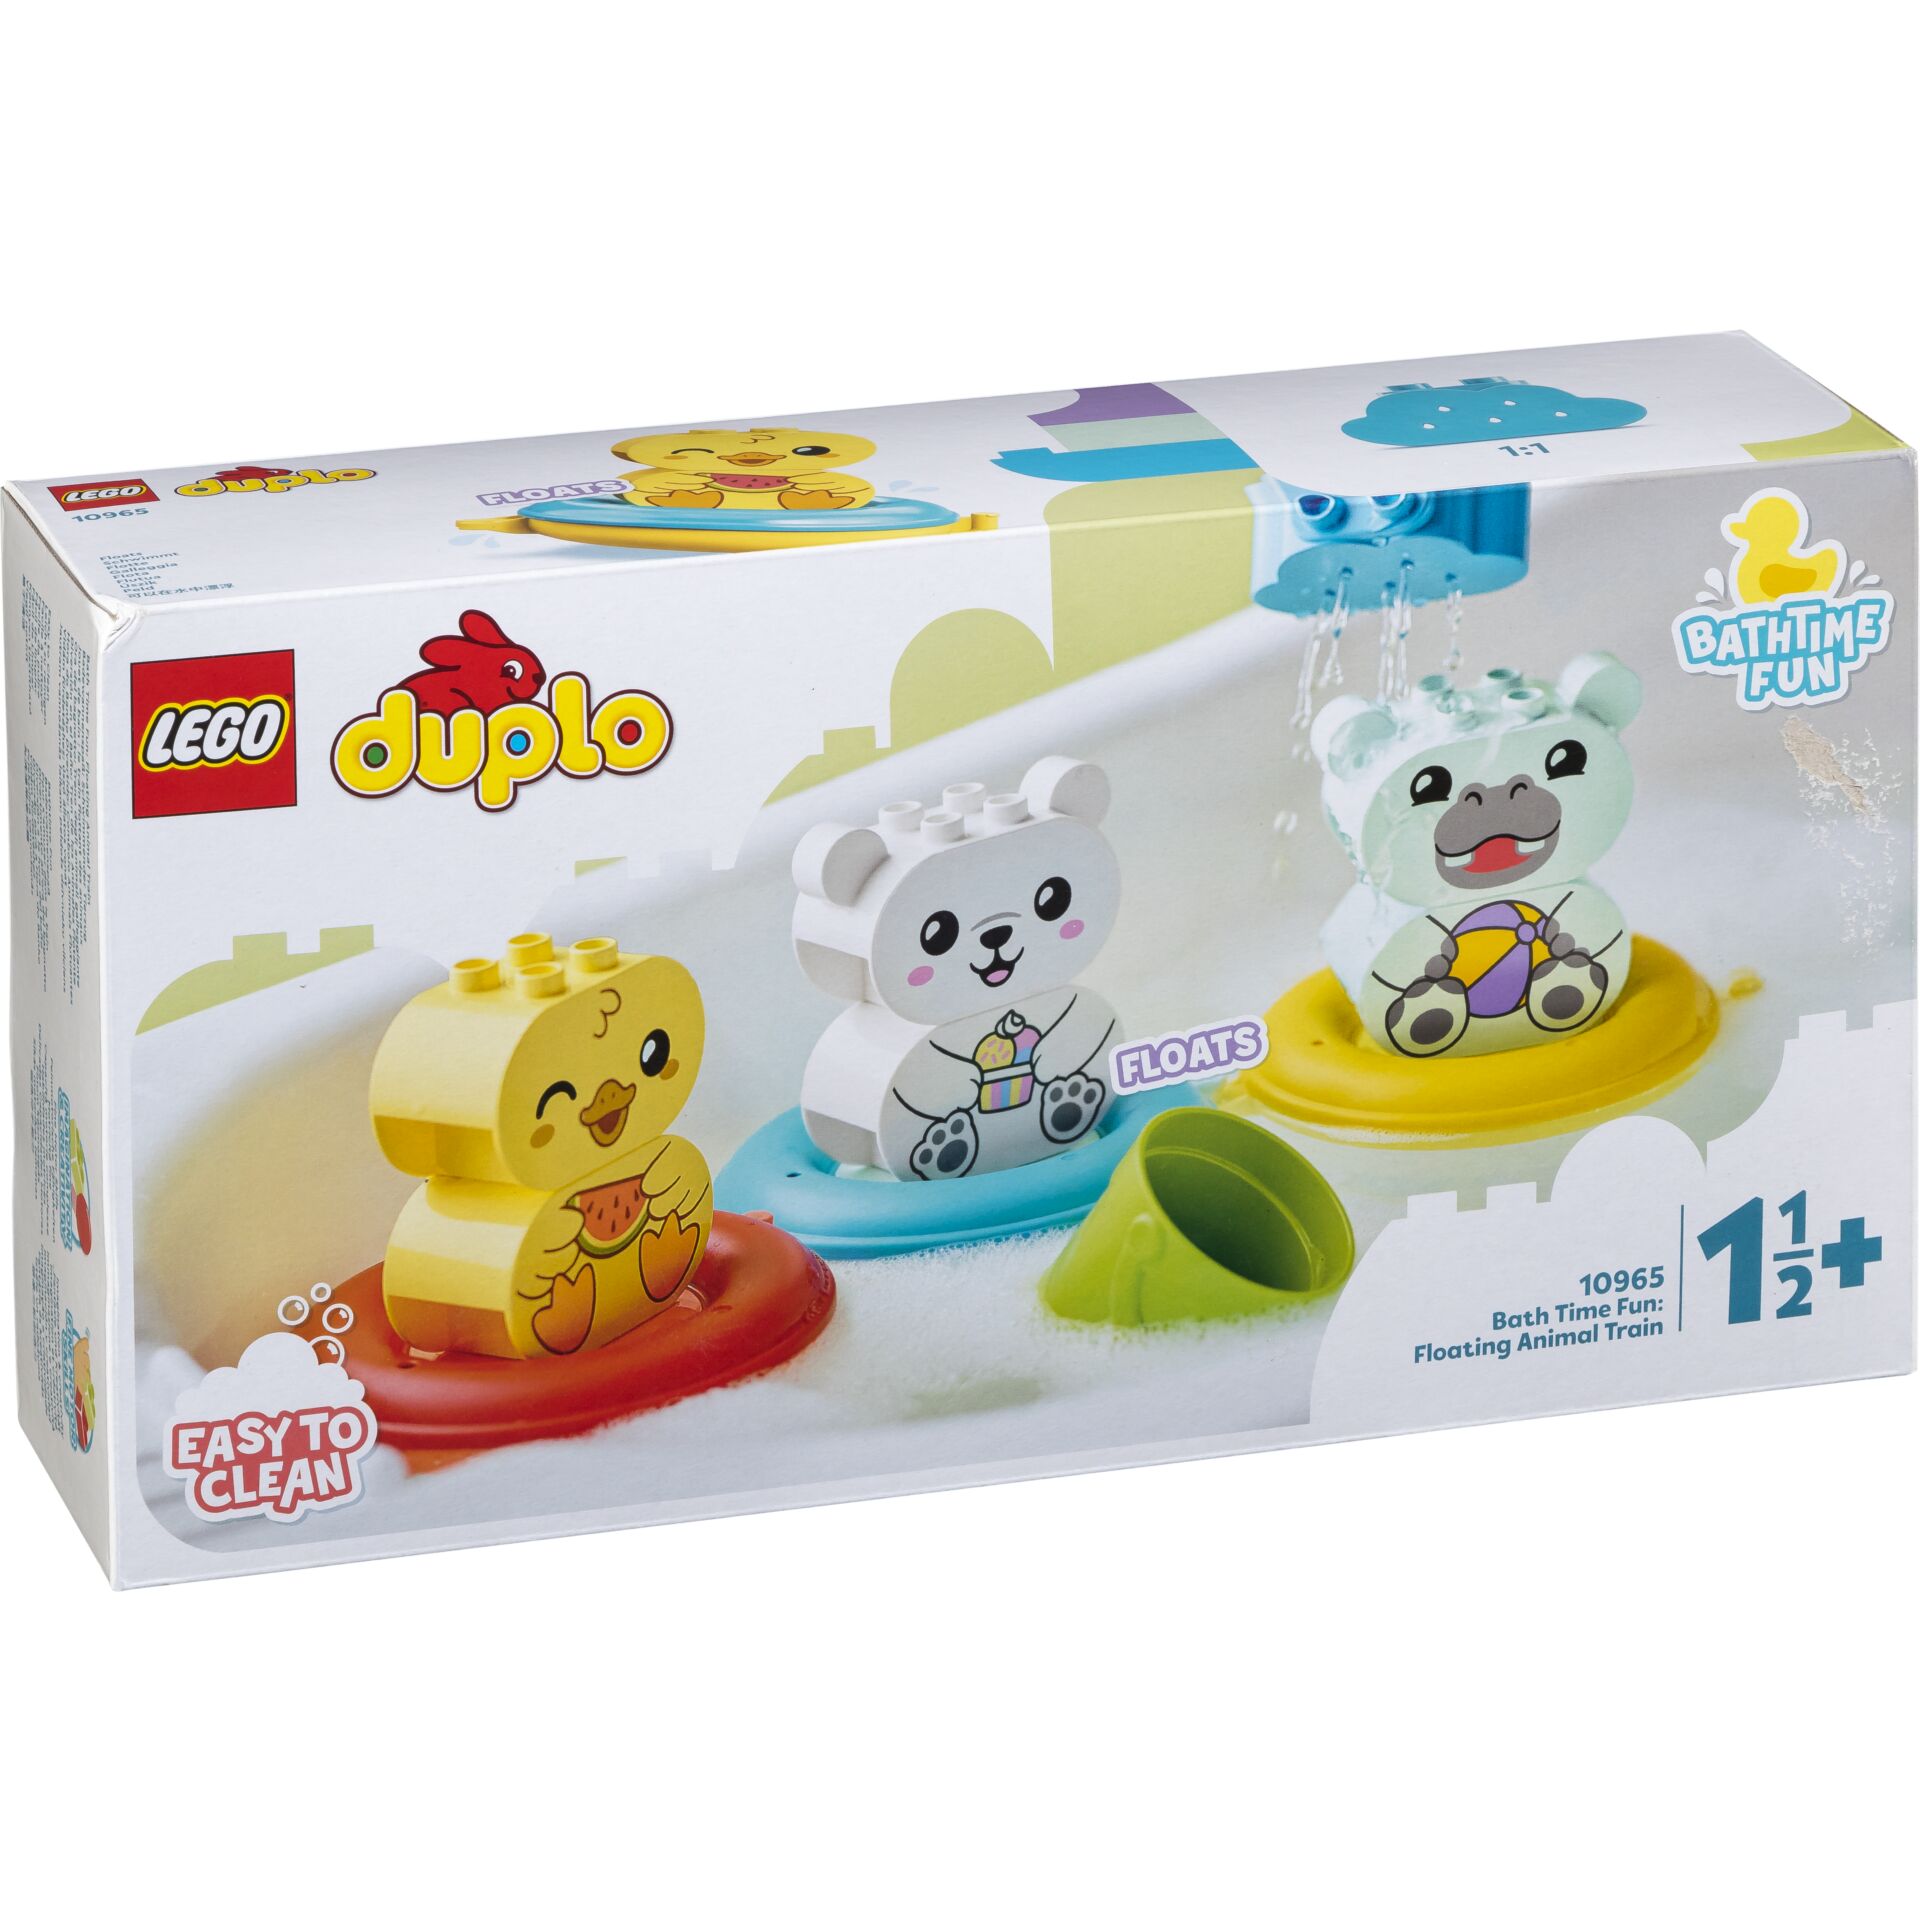 LEGO Duplo 10965 Bath Time Fun: Floating Animal Train